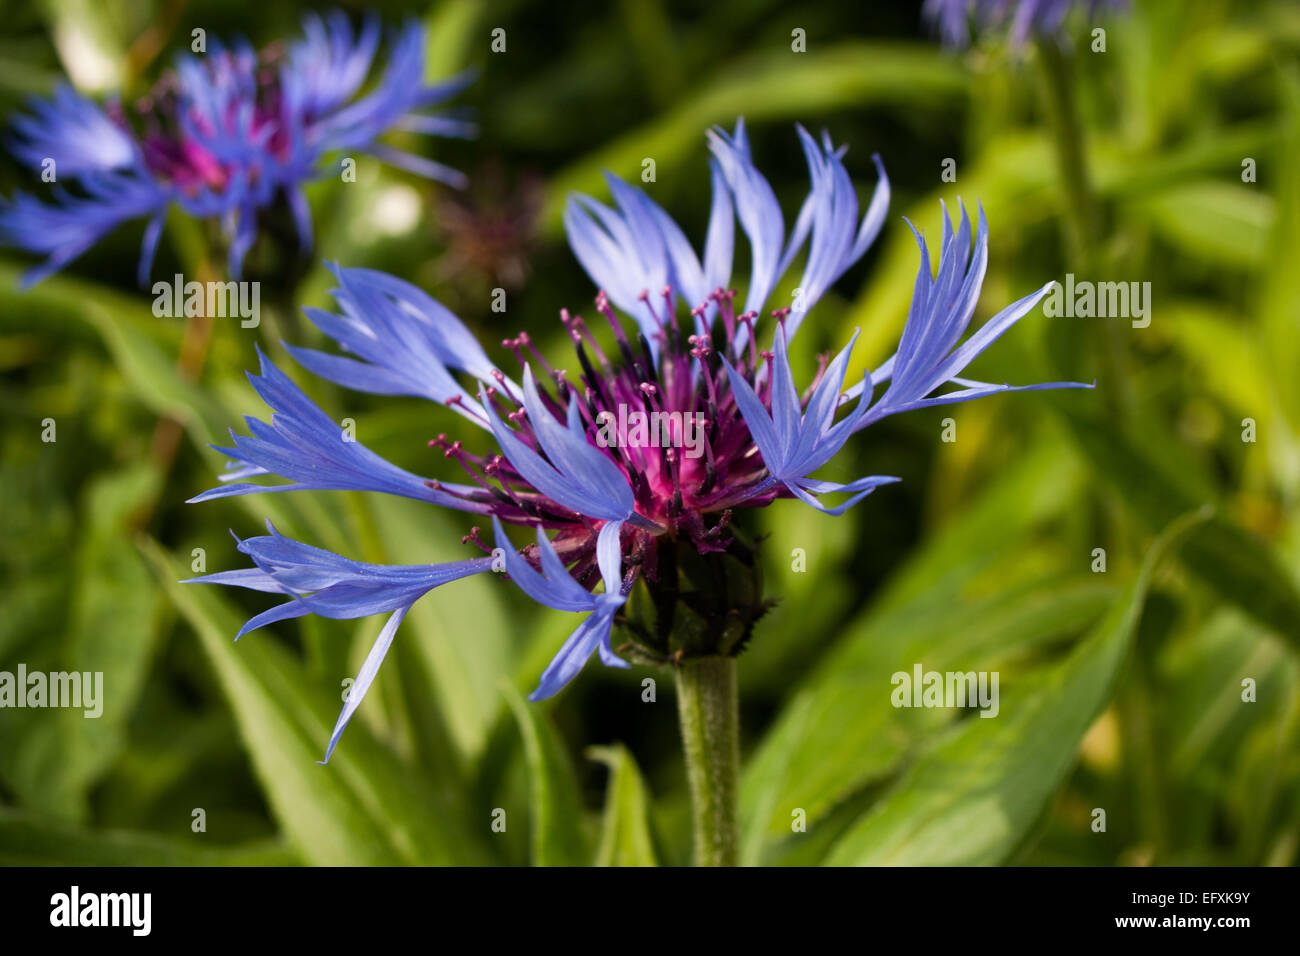 Squarrose Knapweed Flower (Centaurea triumfettii) Stock Photo